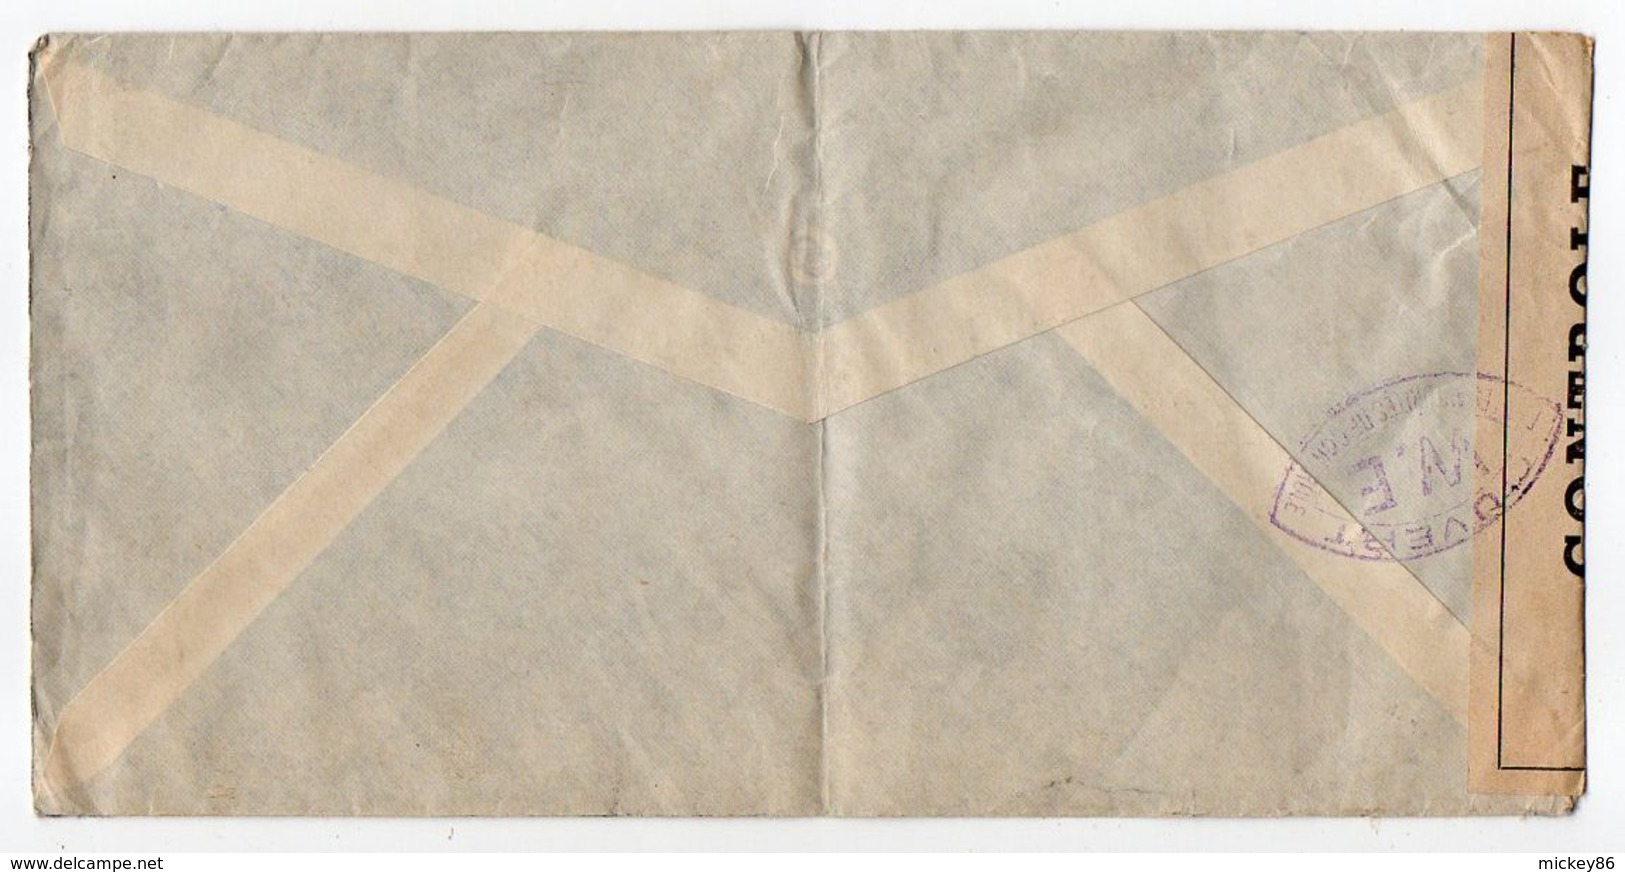 Suisse-1940-Lettre CENSUREE (W.E) De Bâle Pour La France -timbre --cachet -- Personnalisée  G.KIEFFER & Cie - Briefe U. Dokumente